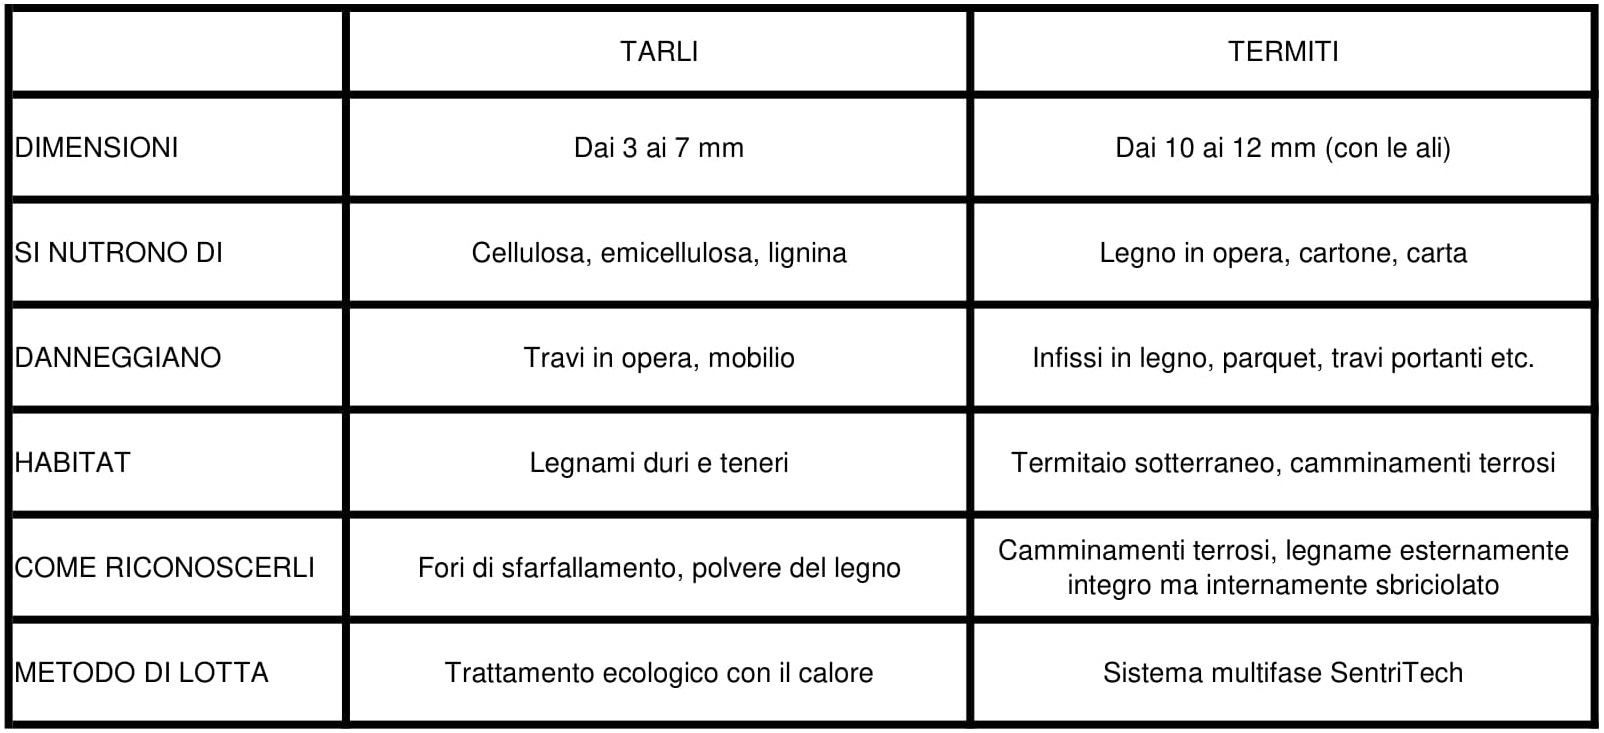 Le principali differenze tra le infestazioni da Termiti e da Tarli